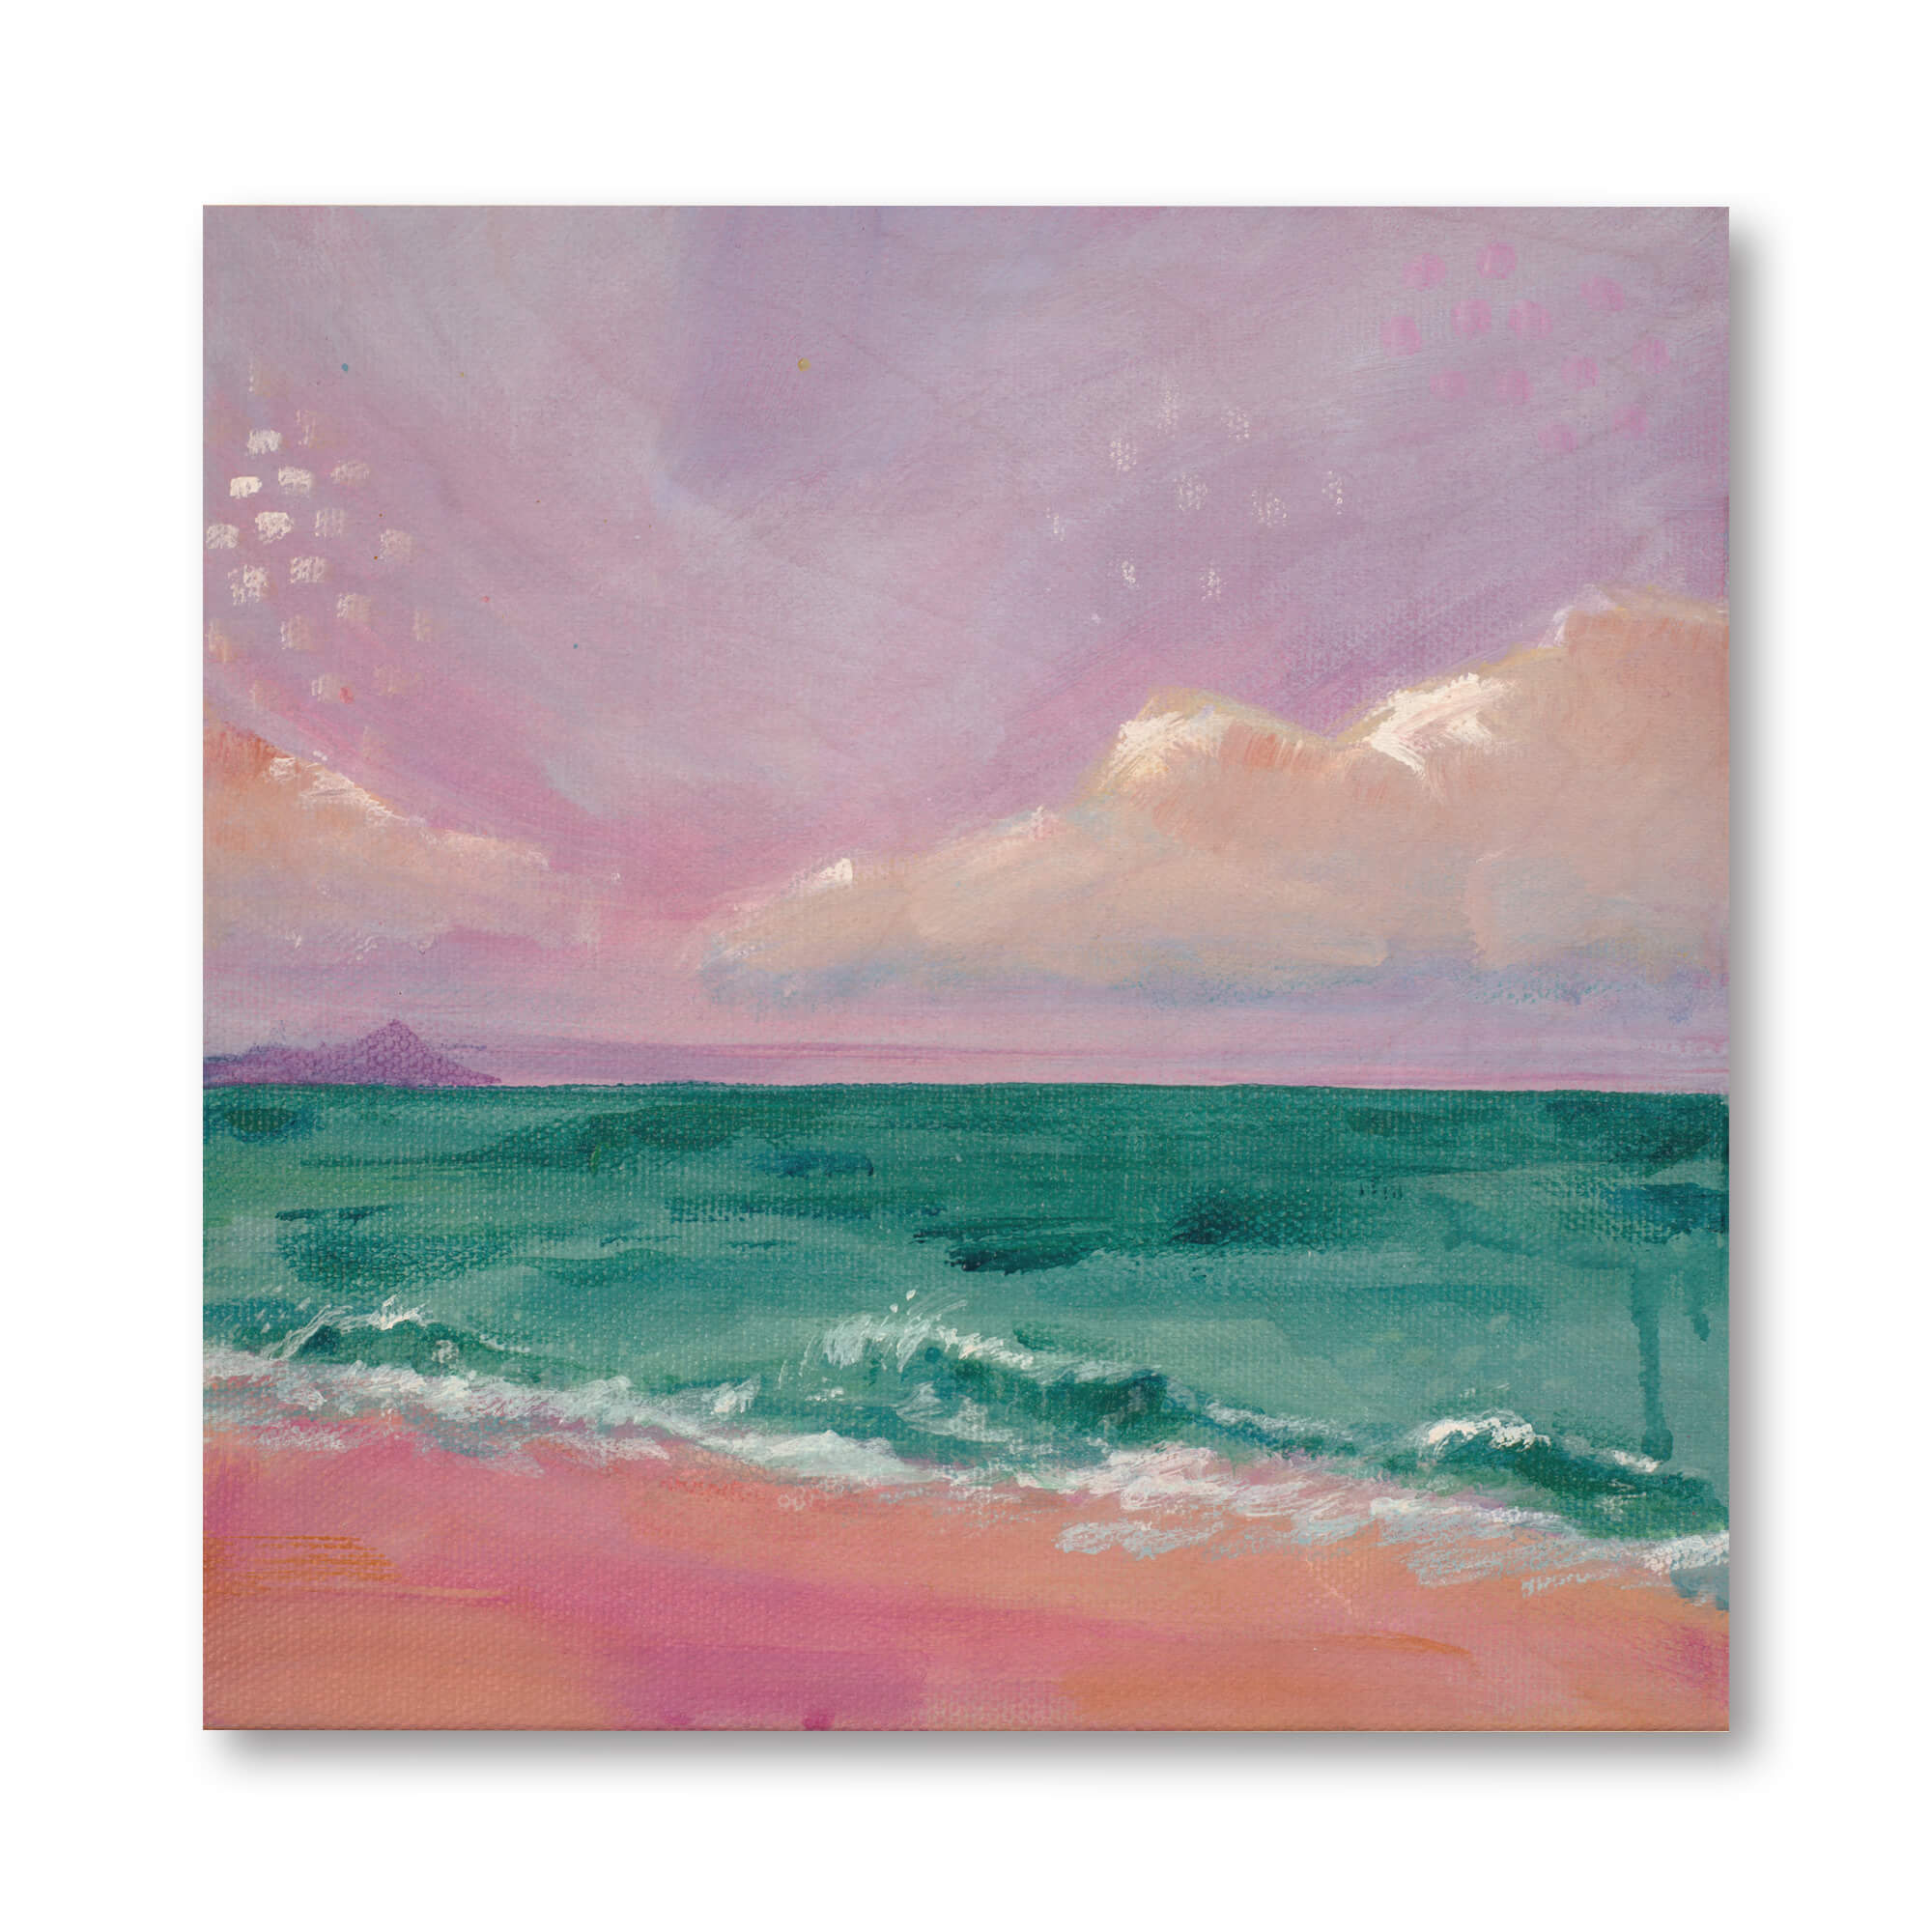 Purple hued sky and teal ocean by Hawaii artist Lindsay Wilkins